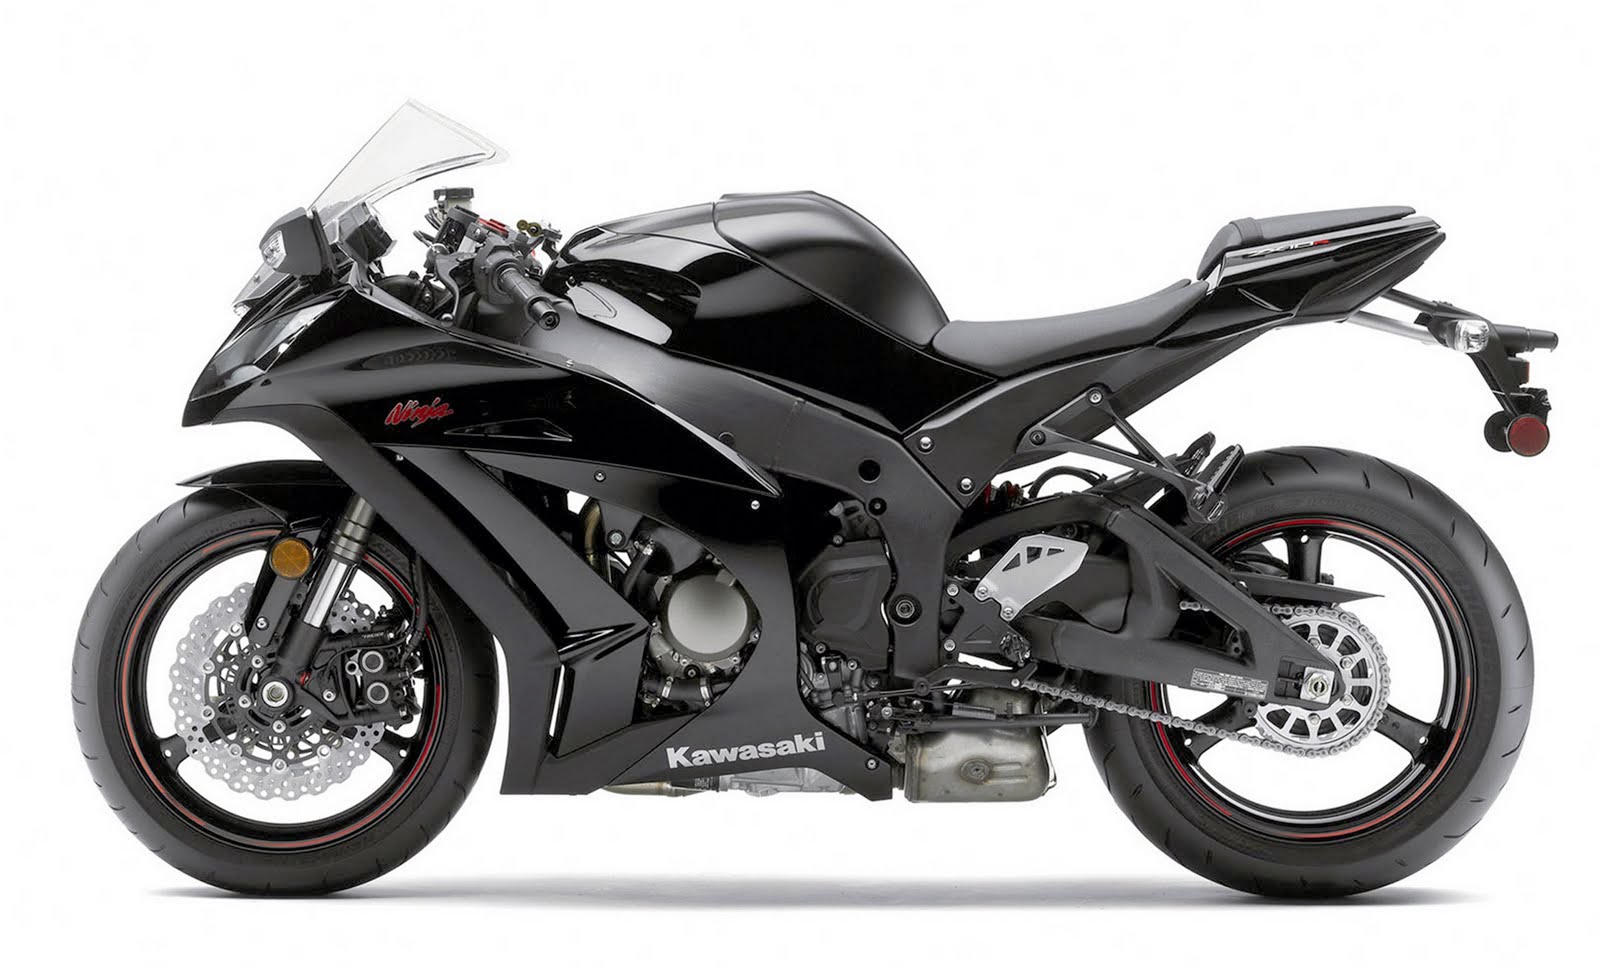 New 2013 Kawasaki Ninja 1000 Bikes ~ Top Bikes Zone